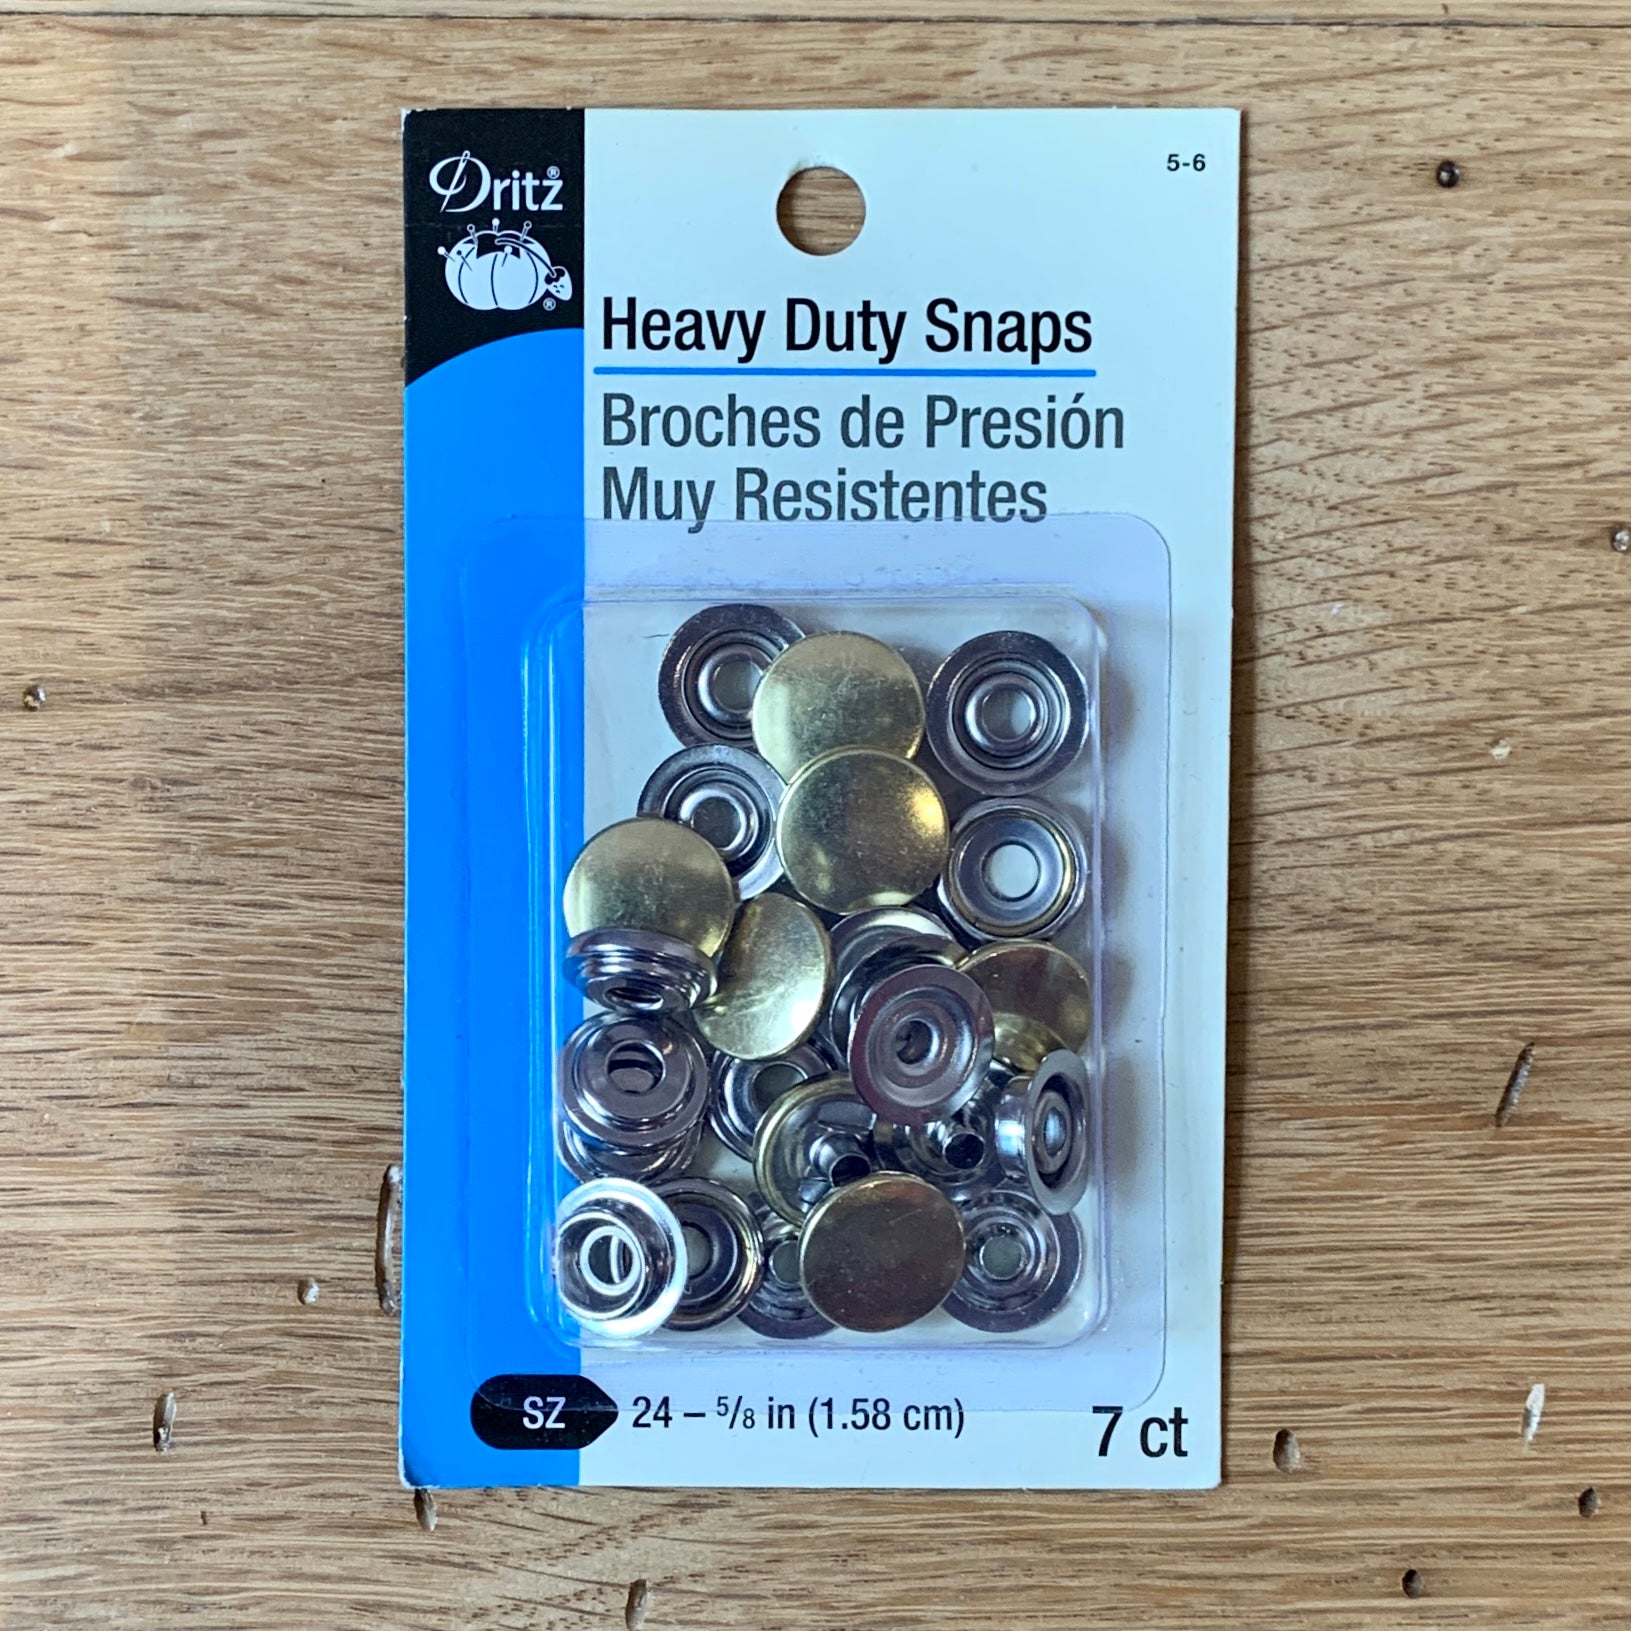 Dritz Heavy Duty Snap Pliers – Heartfully Handmade